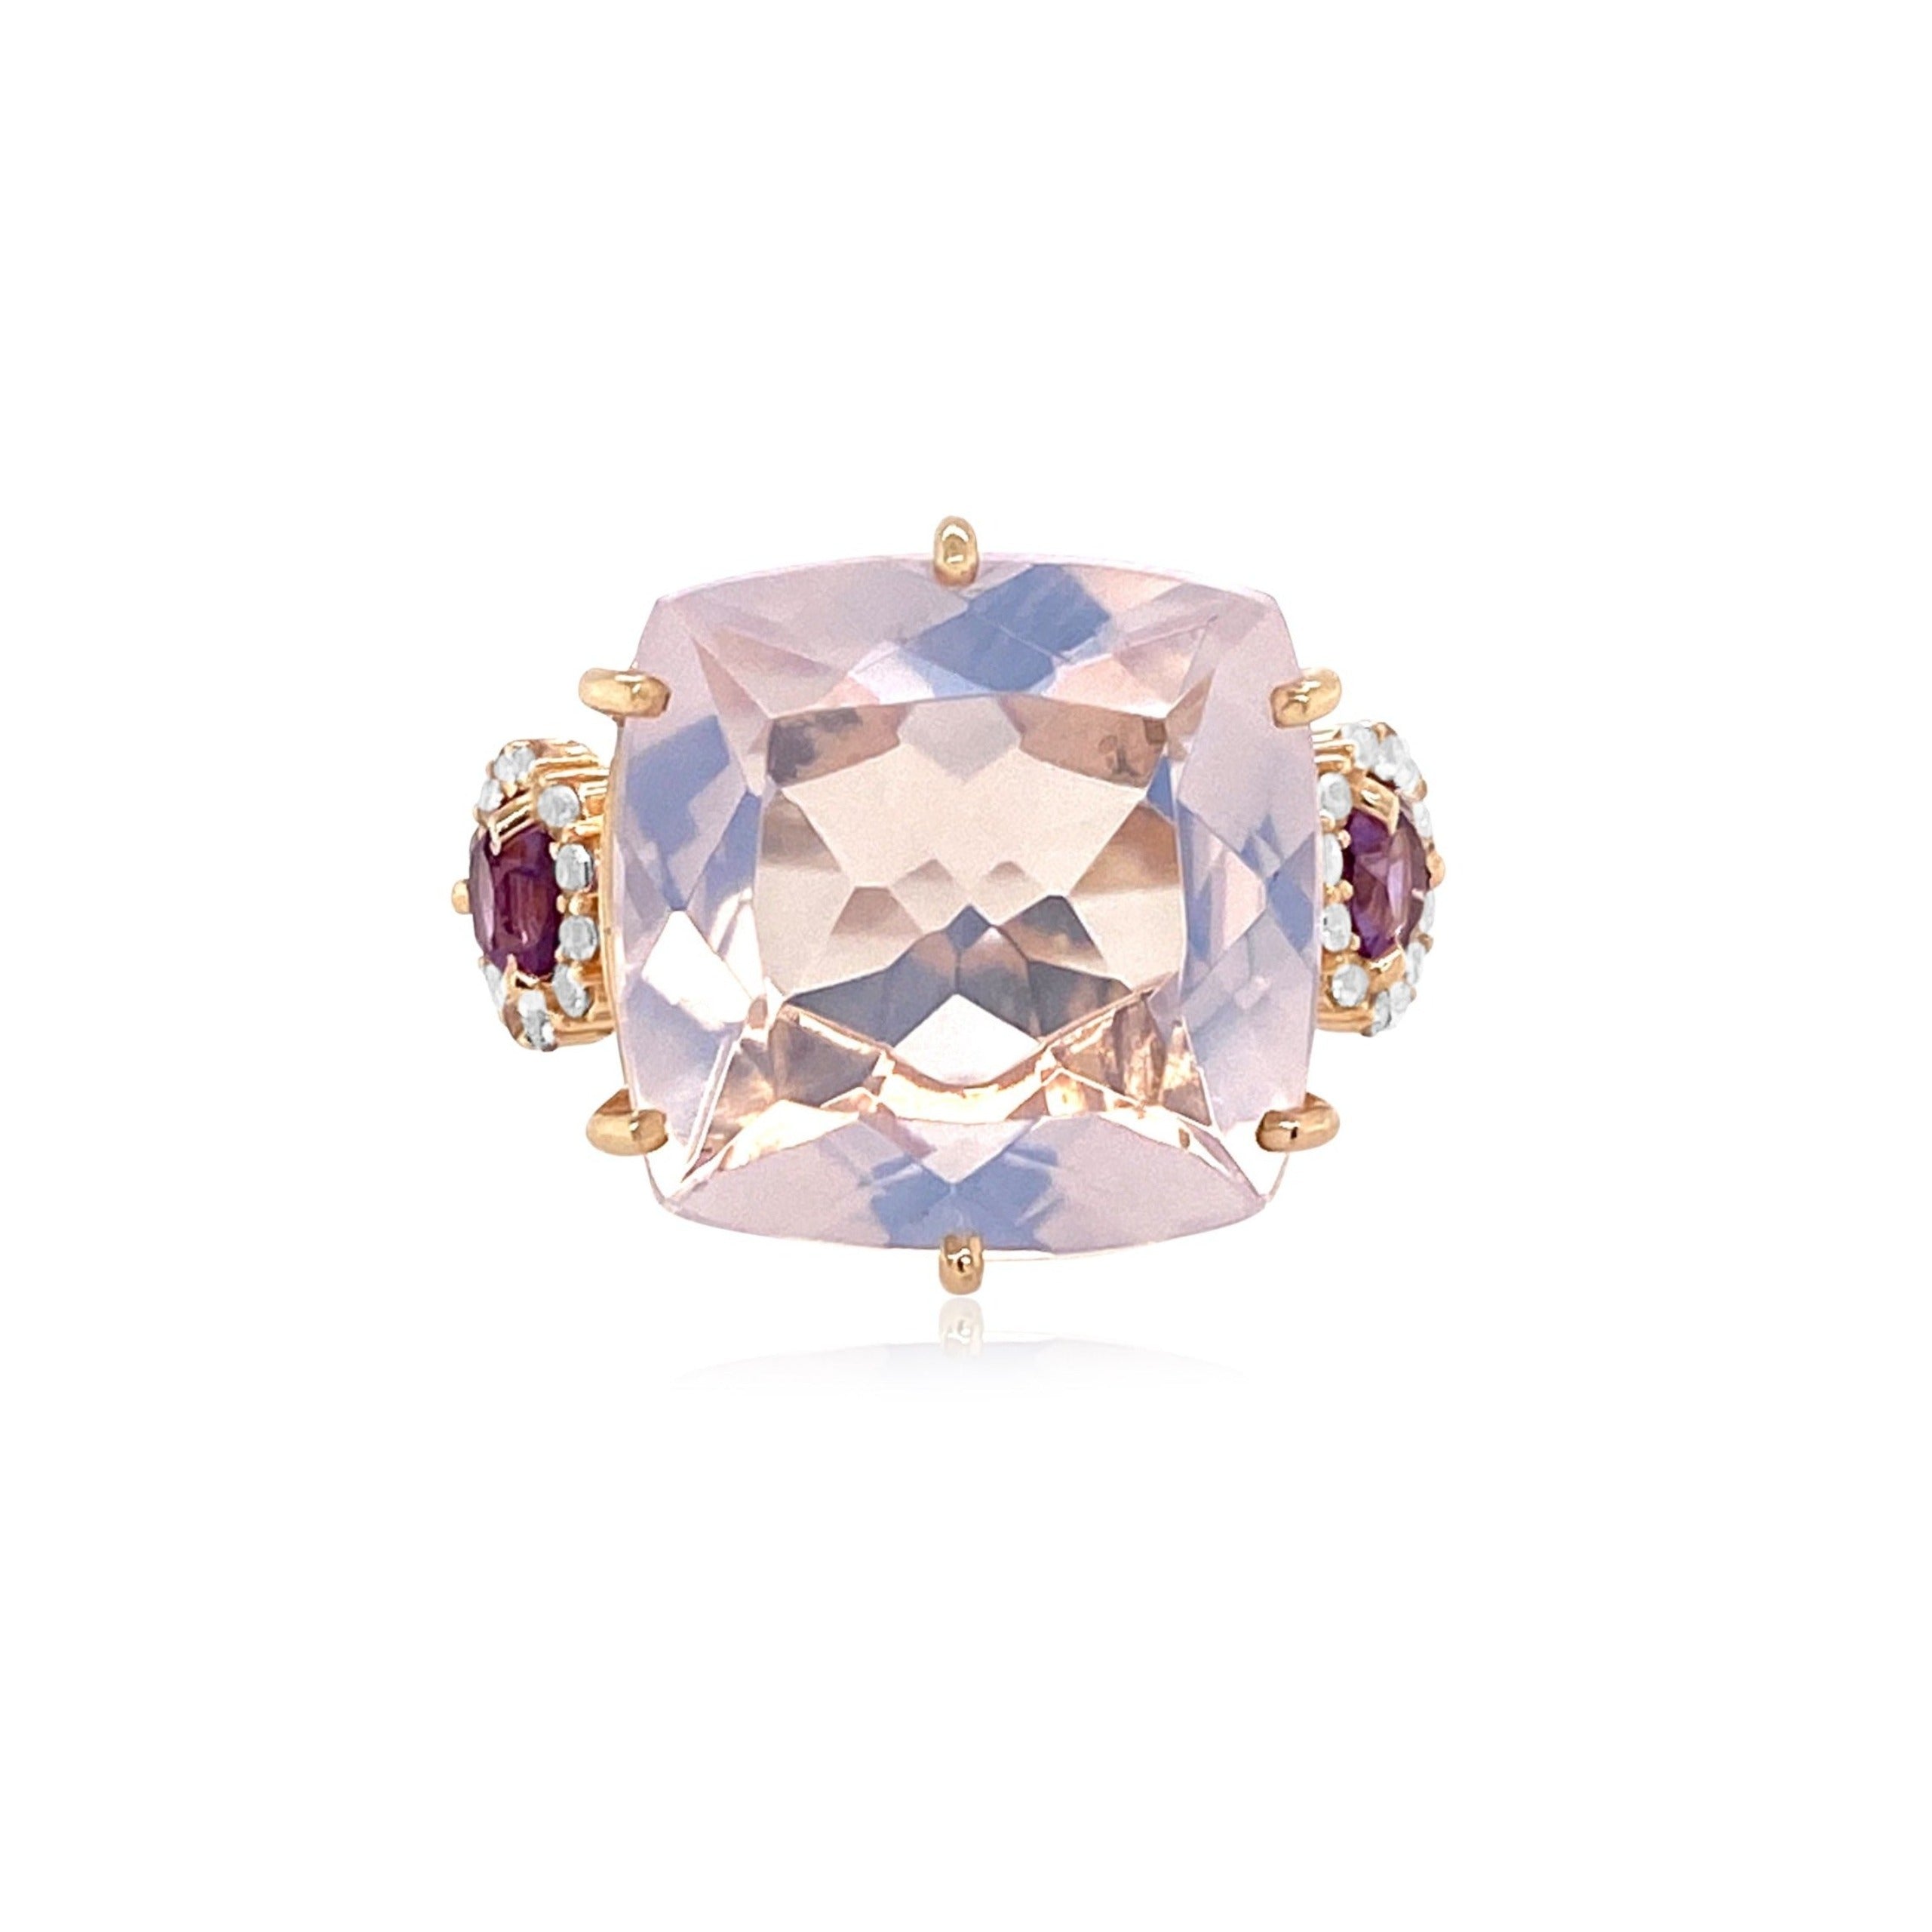 DEUX Ring (1145) - Lilac Opal Amethyst, Pink Amethyst / RG